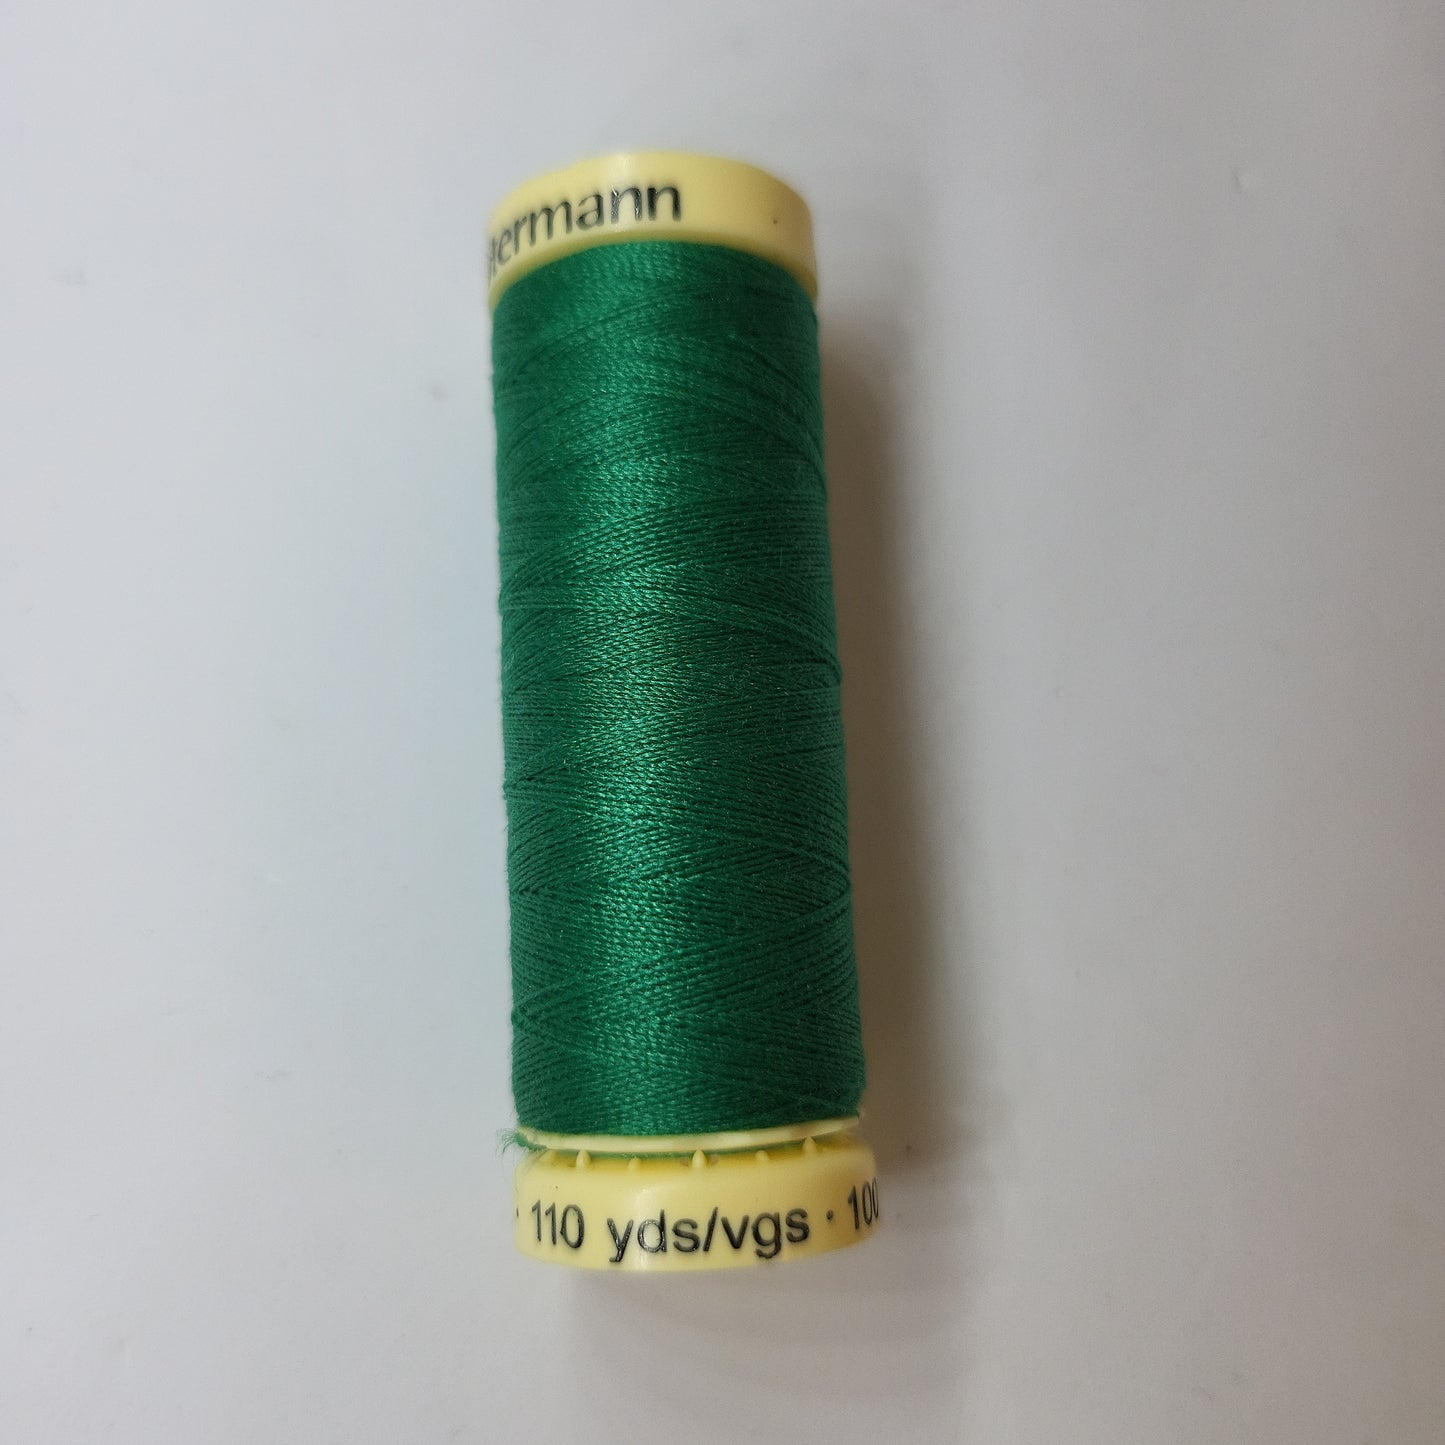 402 Sew-All Thread